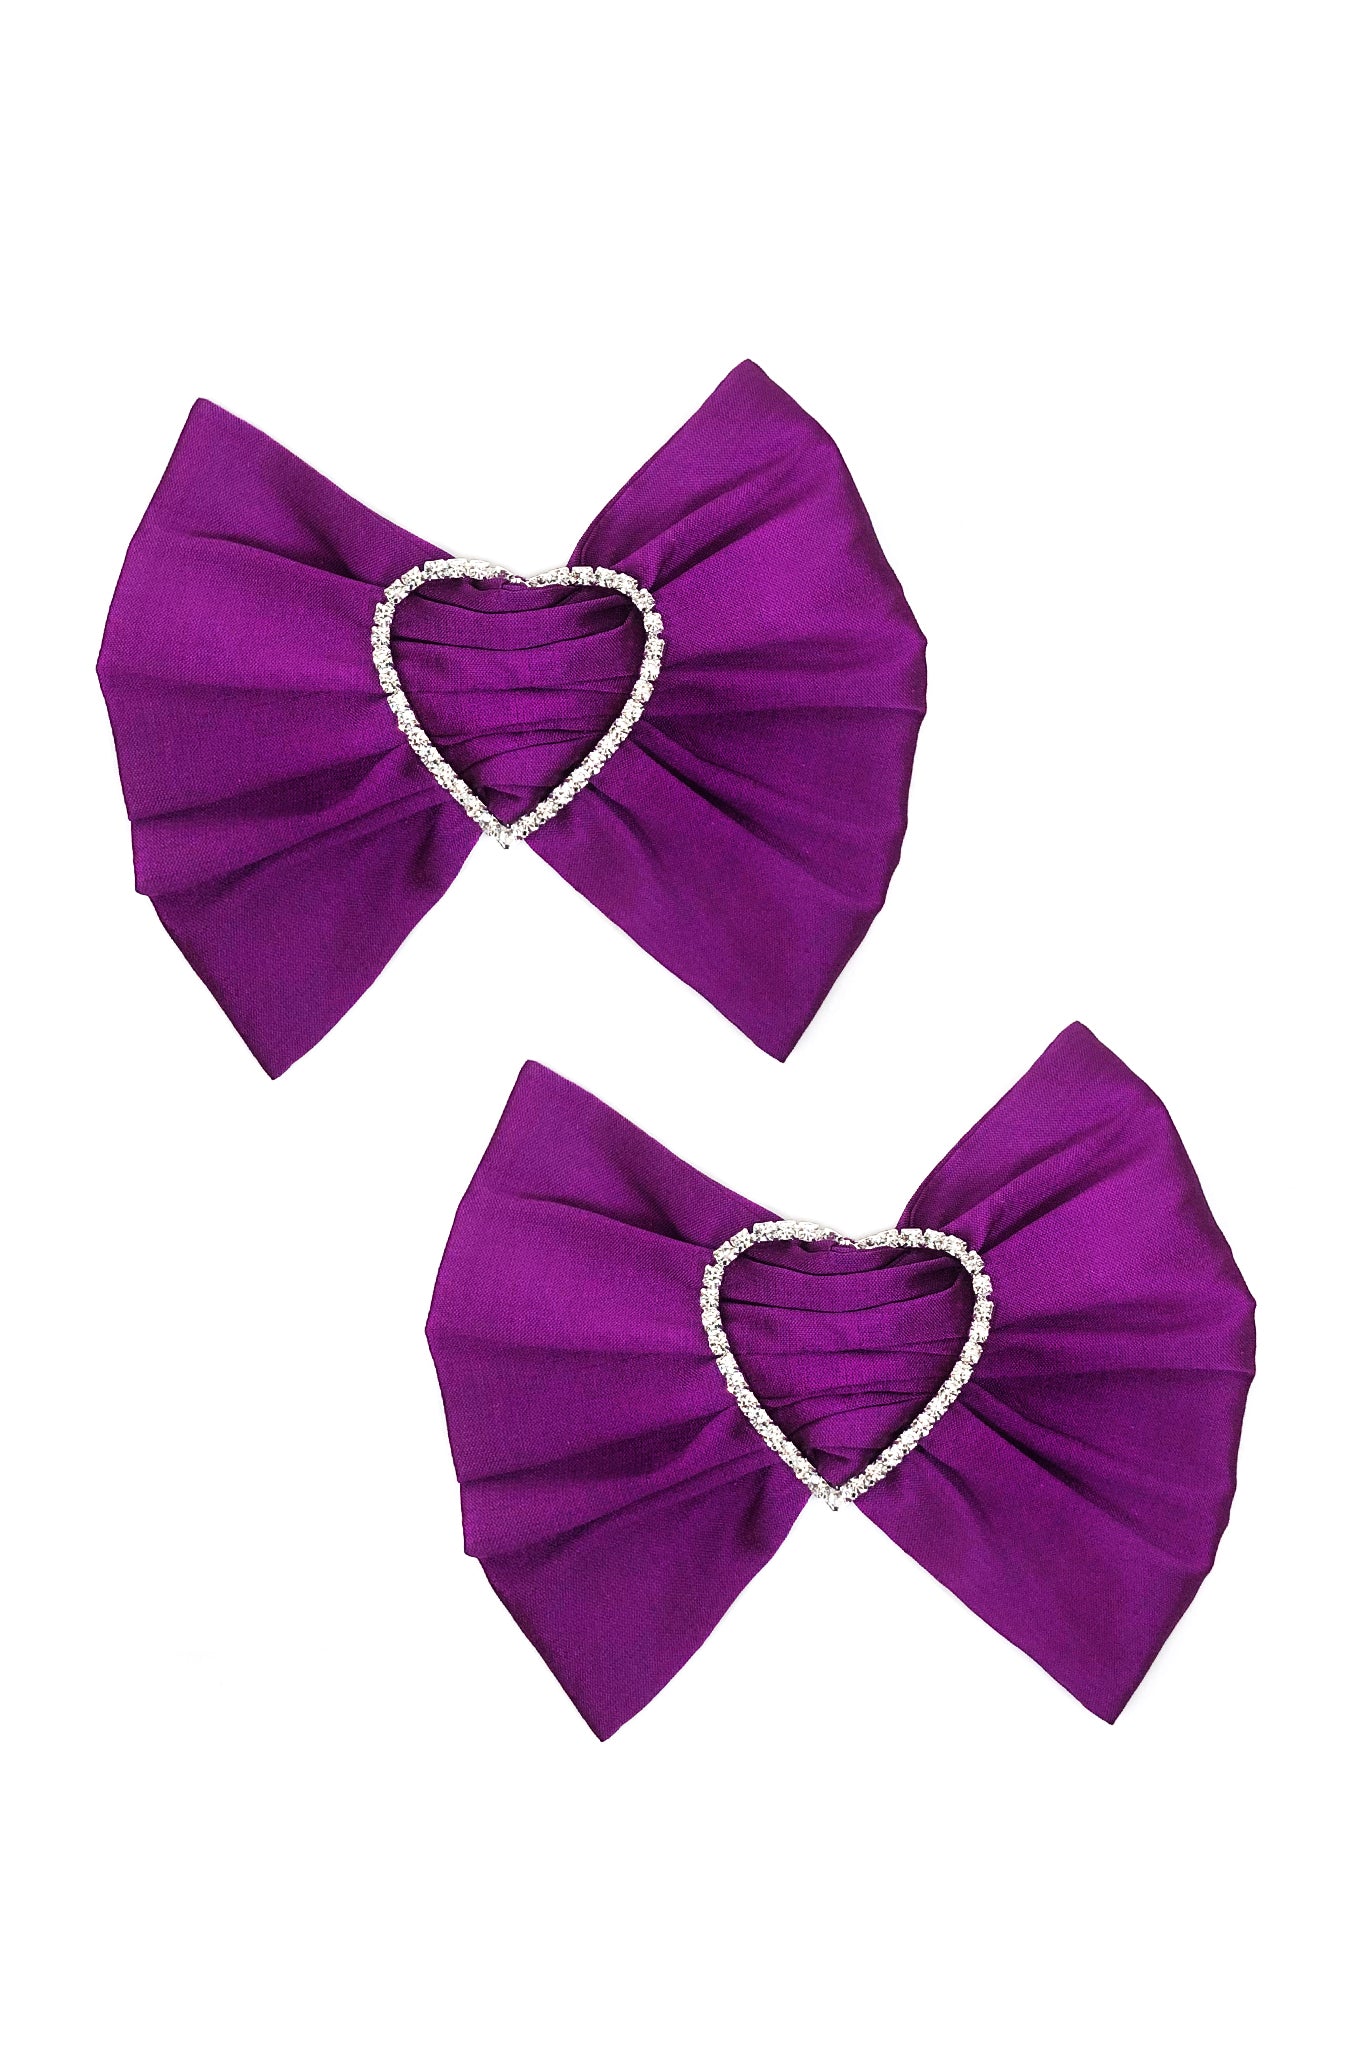 Merrfer Bow Earrings, Purple